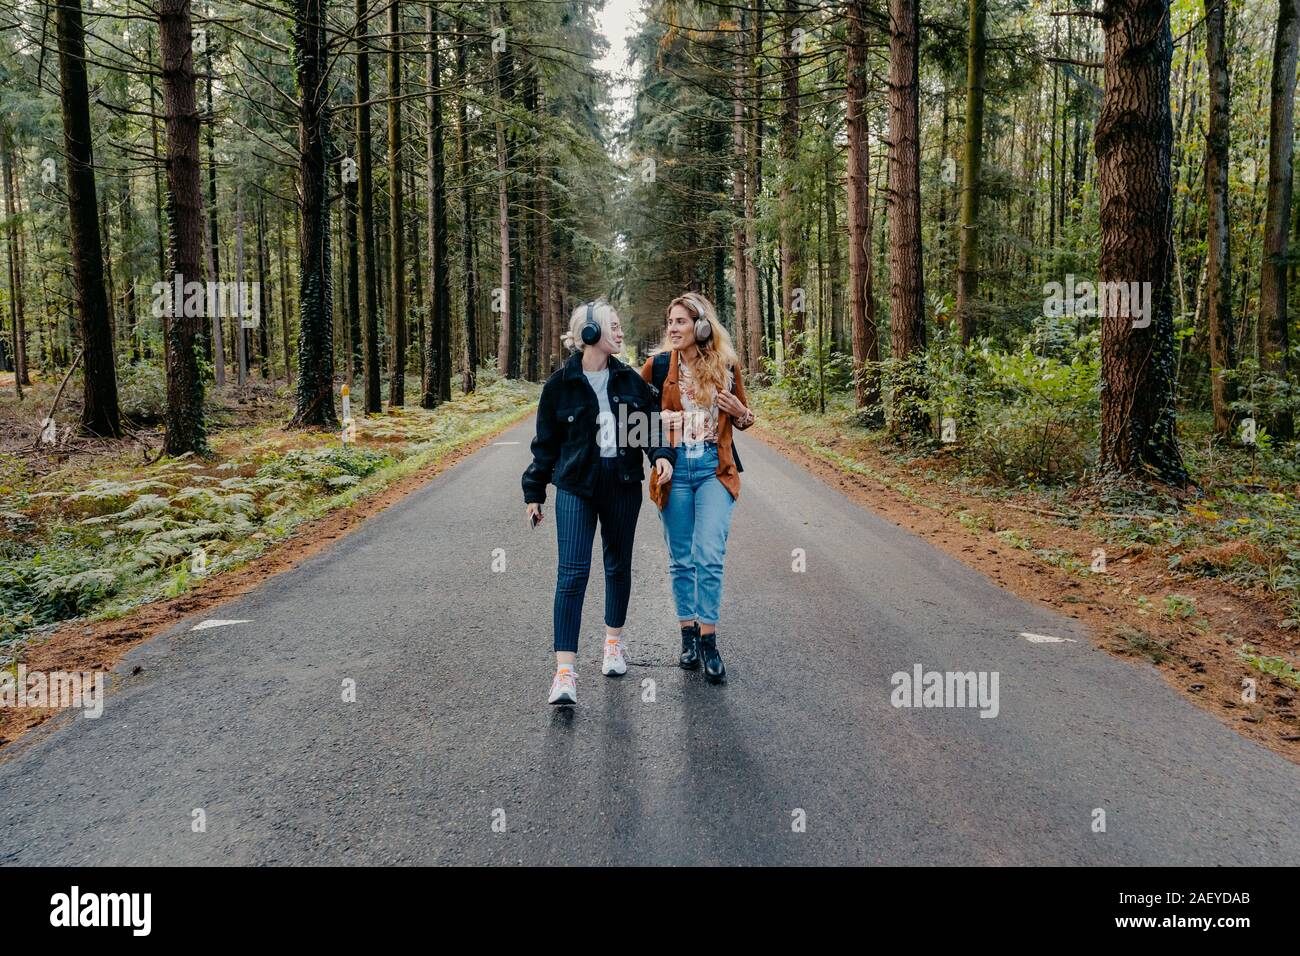 Deux femmes marchant sur une route dans la forêt tout en écoutant de la musique Banque D'Images